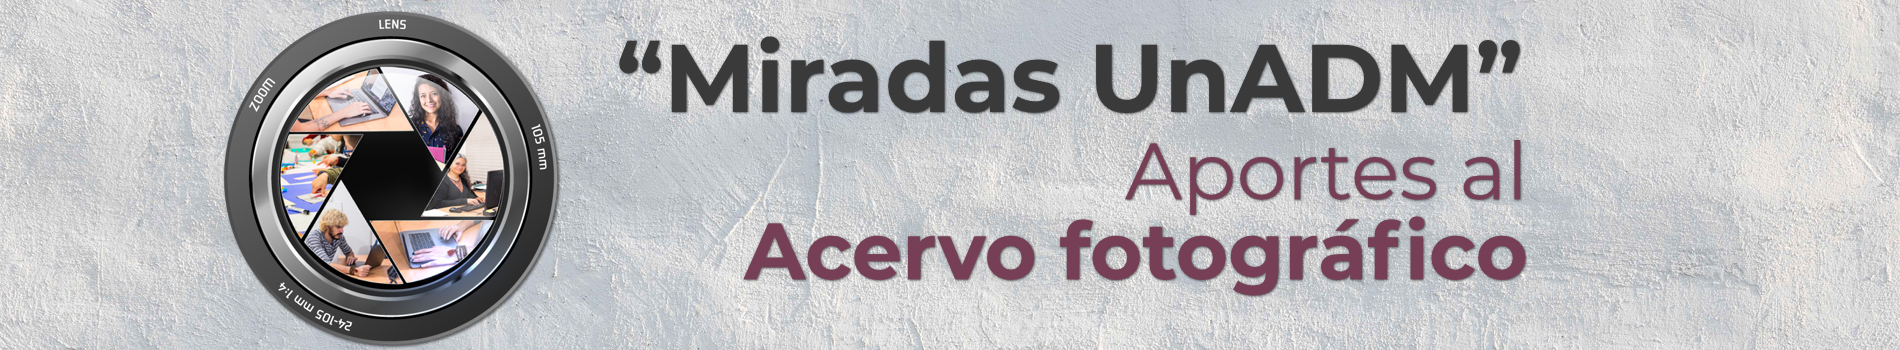 Banner Miradas UnADM